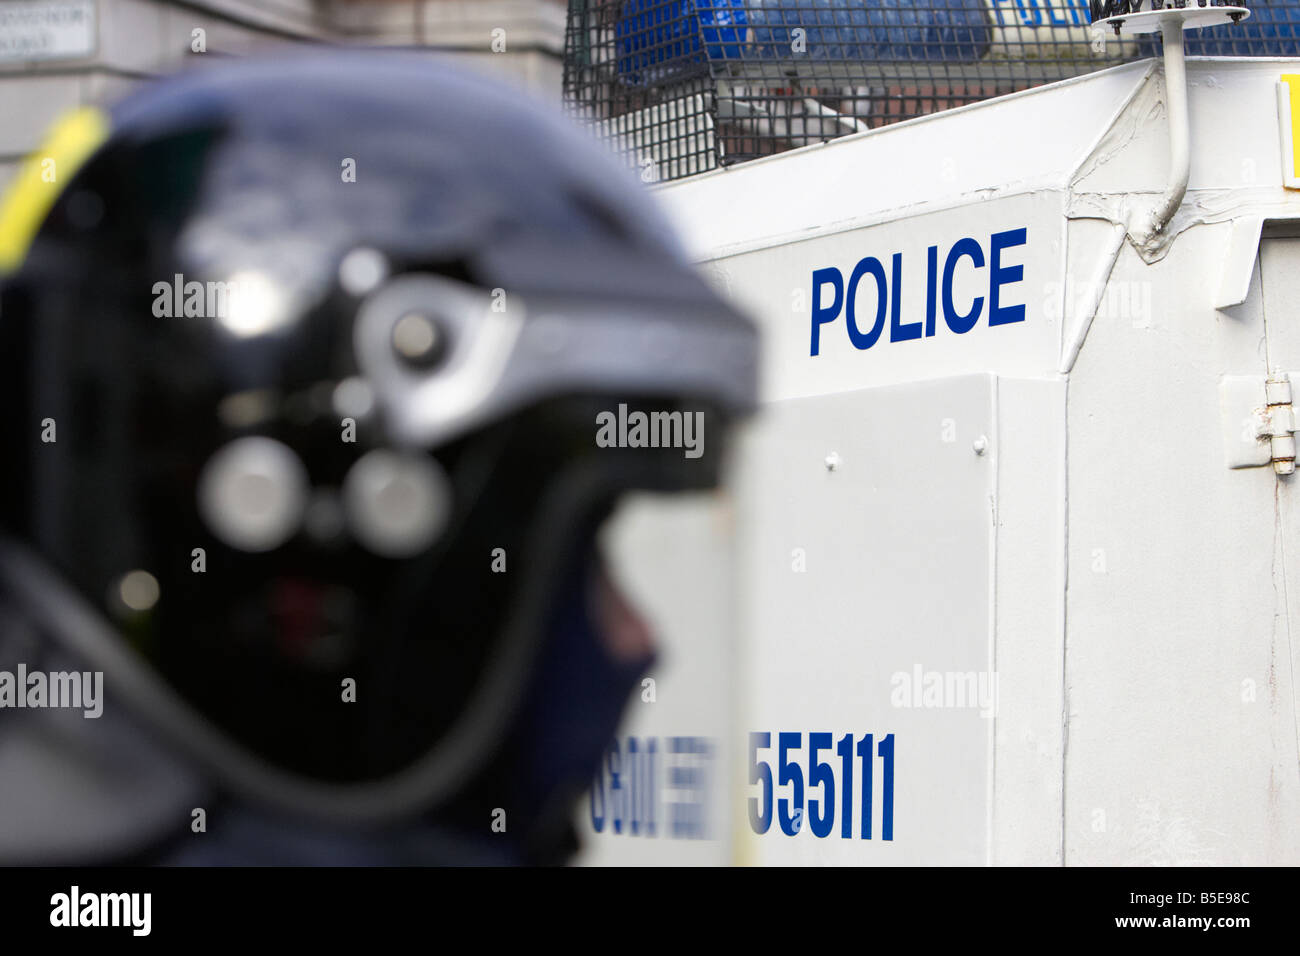 Service de police PSNI de l'Irlande du Nord agent Riot Squad le port de casque et visière en face de landrover blindé Banque D'Images